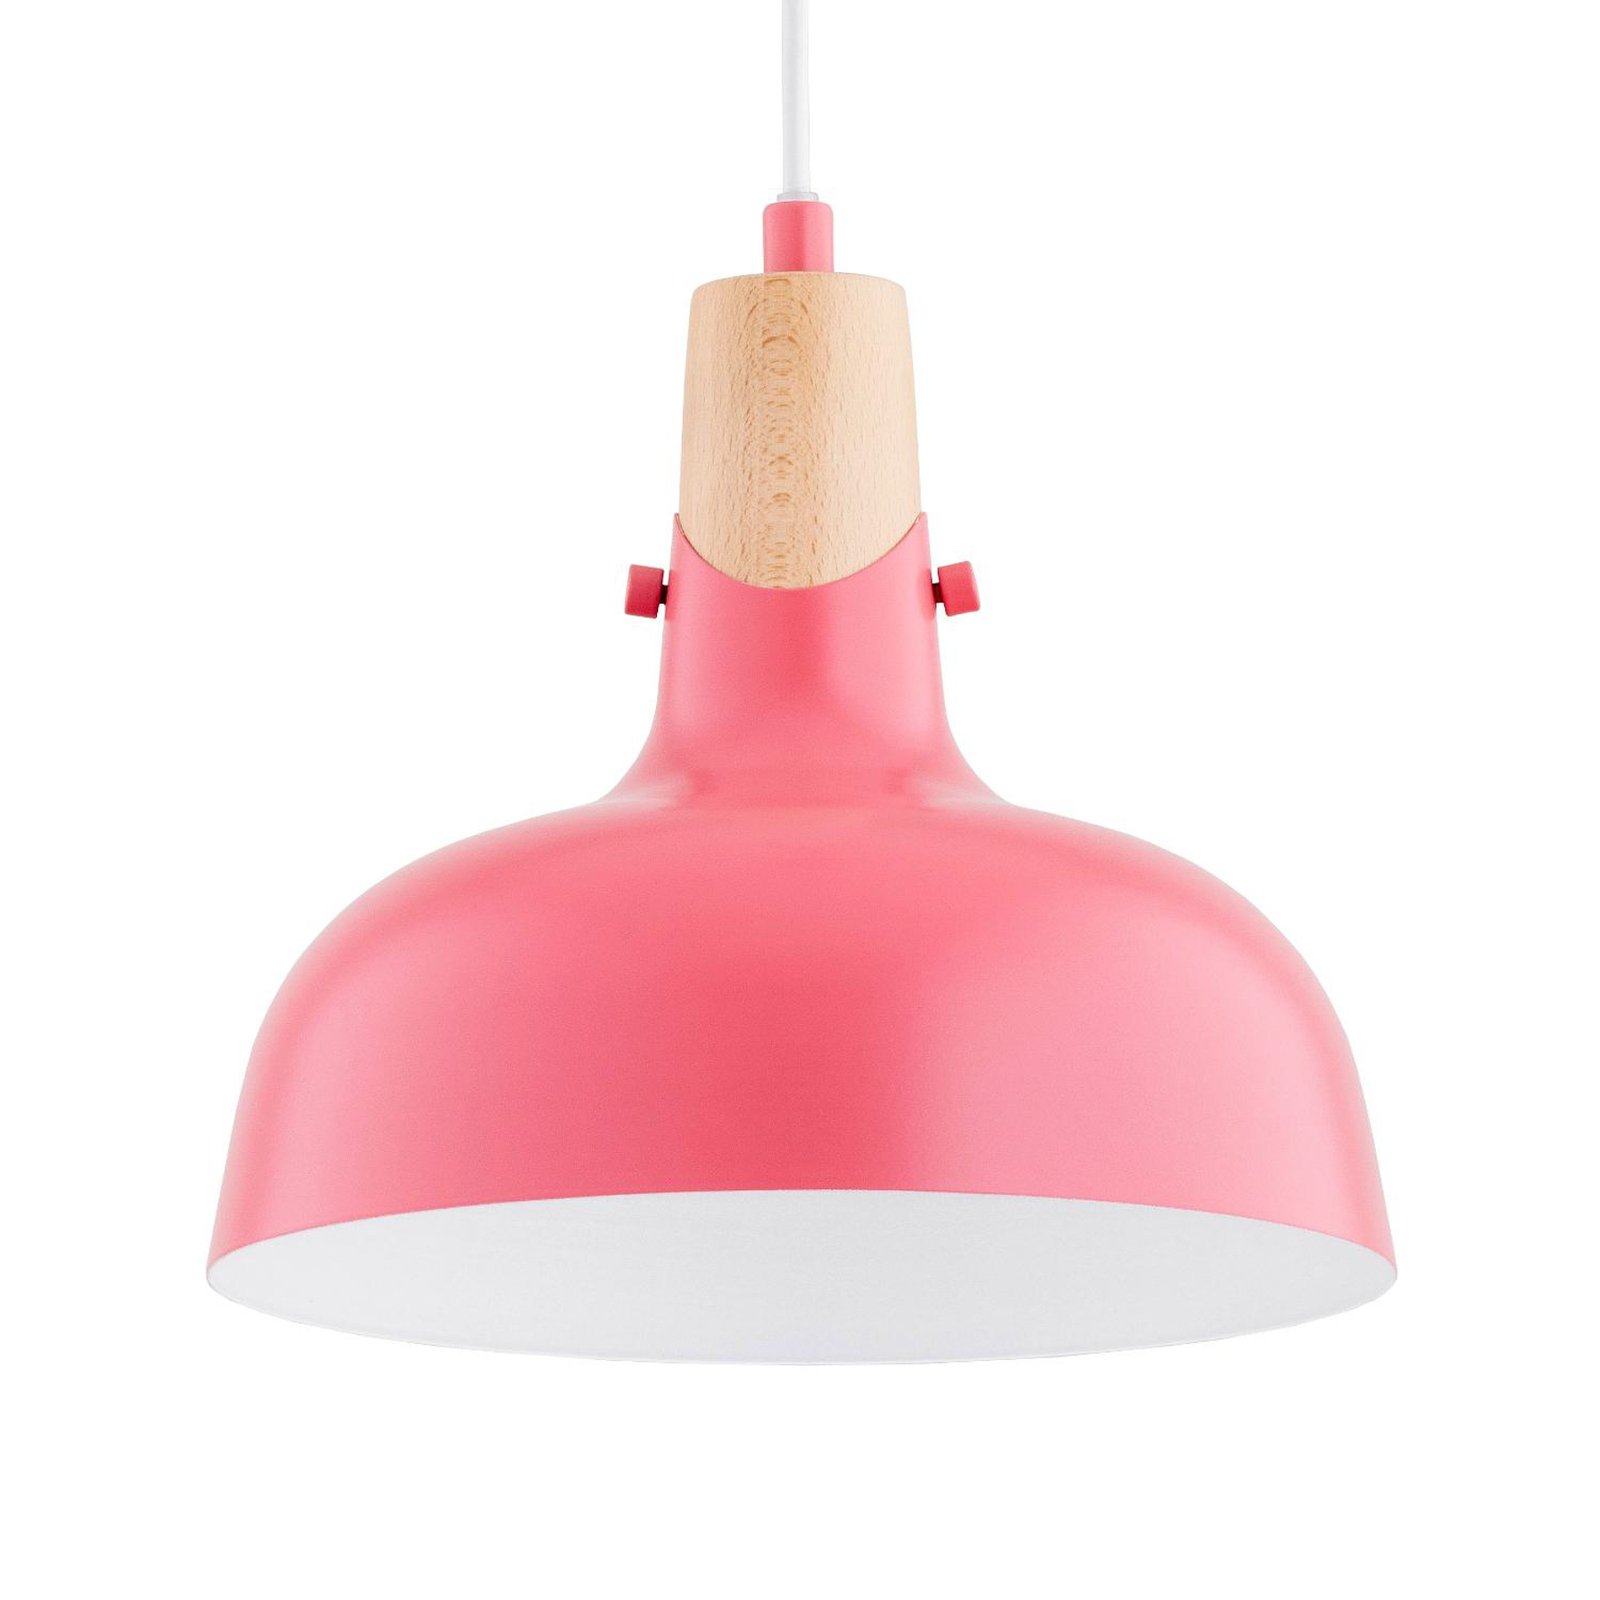 Solo Gem hanglamp, roze, Ø 23 cm, metaal